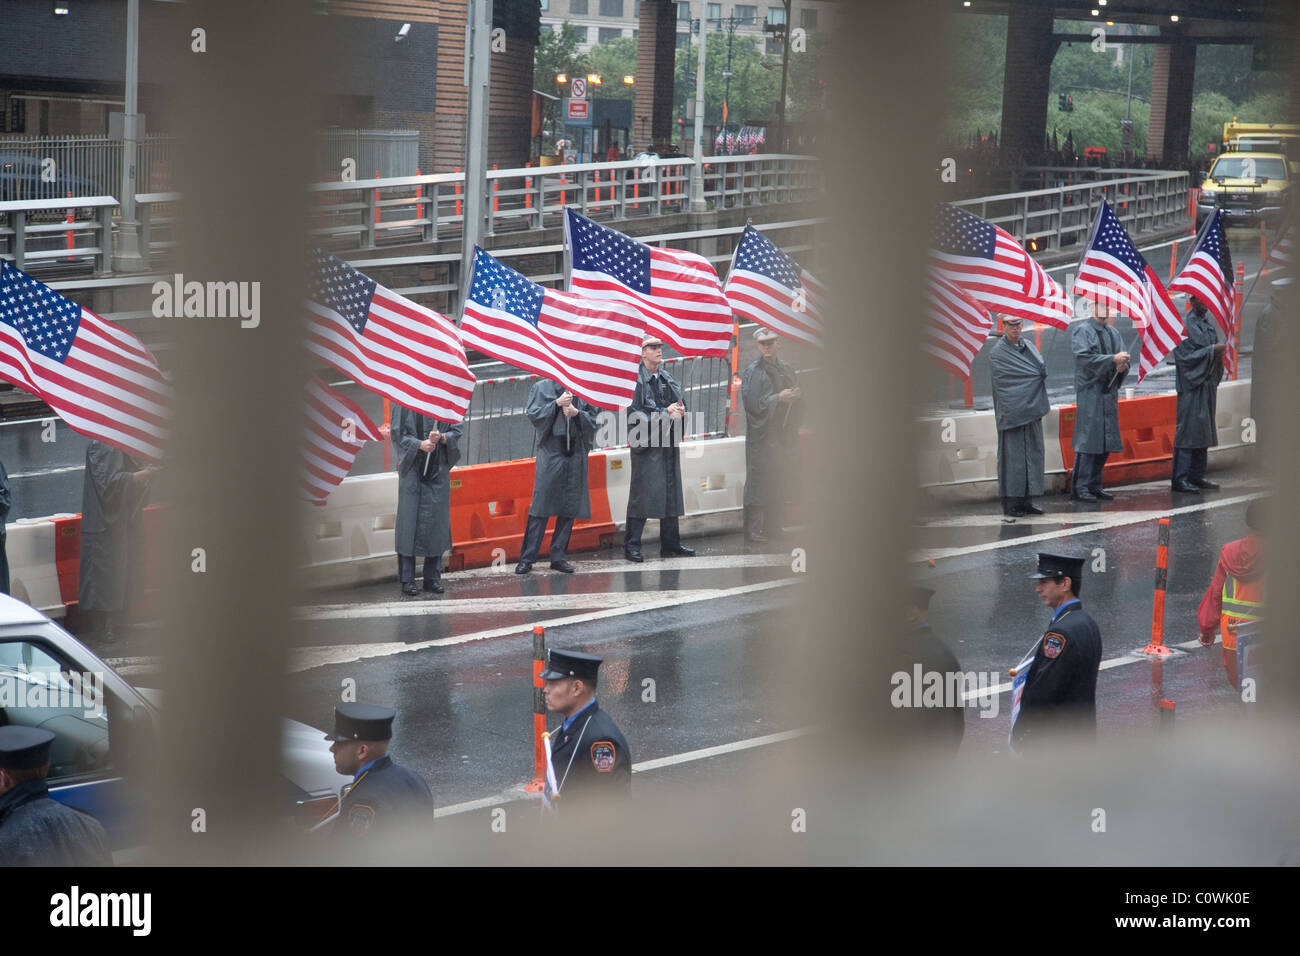 Memorial March pour collègues décédés qui ont couru à travers le Triborough Bridge le 11 septembre. Fire Department, New York Banque D'Images